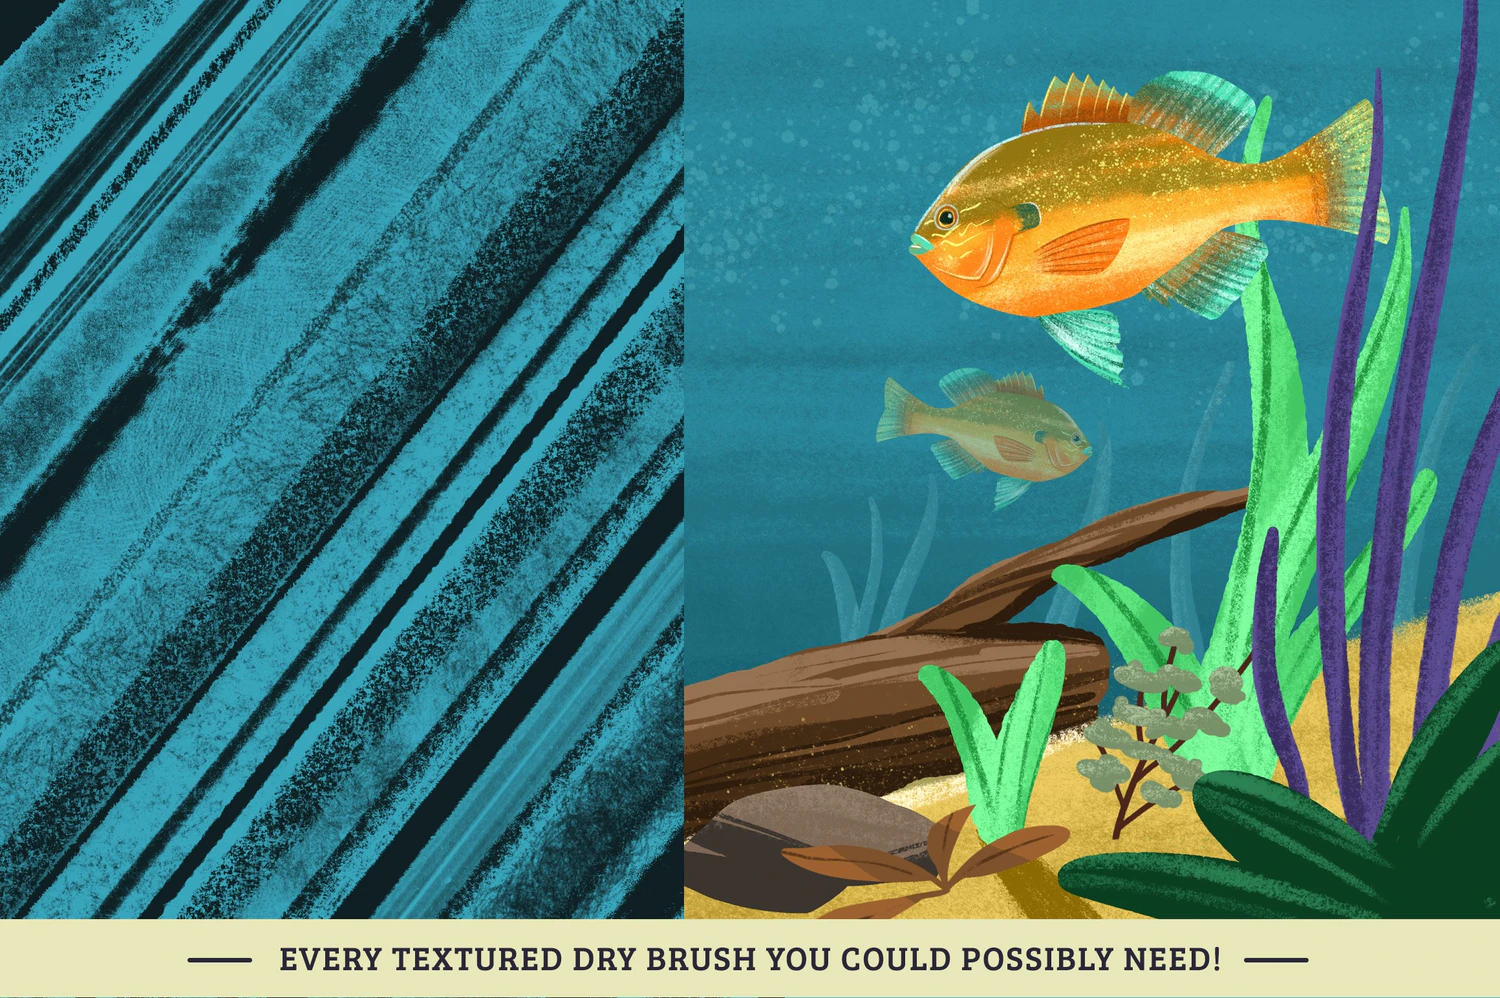 4330 30款粗糙蜡笔木炭笔干画笔艺术绘画效果iPad Procreate笔刷设计素材 Dry Texture Brushes for Procreate@GOOODME.COM